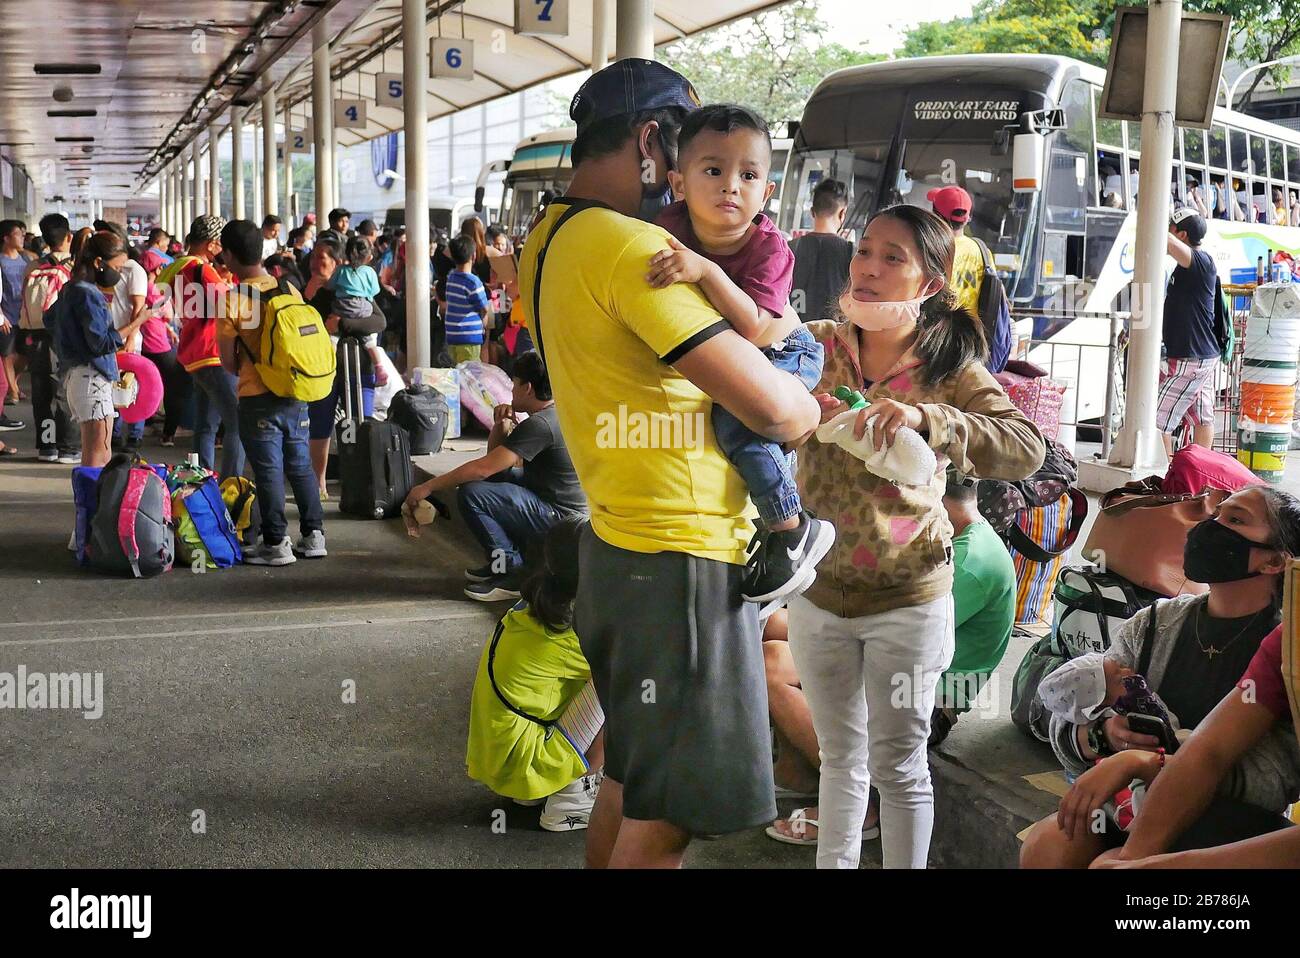 Ciudad De Quezon, Región Capital Nacional, Filipinas. 14 de marzo de 2020. Una madre aplicando alcohol de frotamiento sobre su hijo mientras esperan su viaje en autobús. Crédito: George Buid/Zuma Wire/Alamy Live News Foto de stock